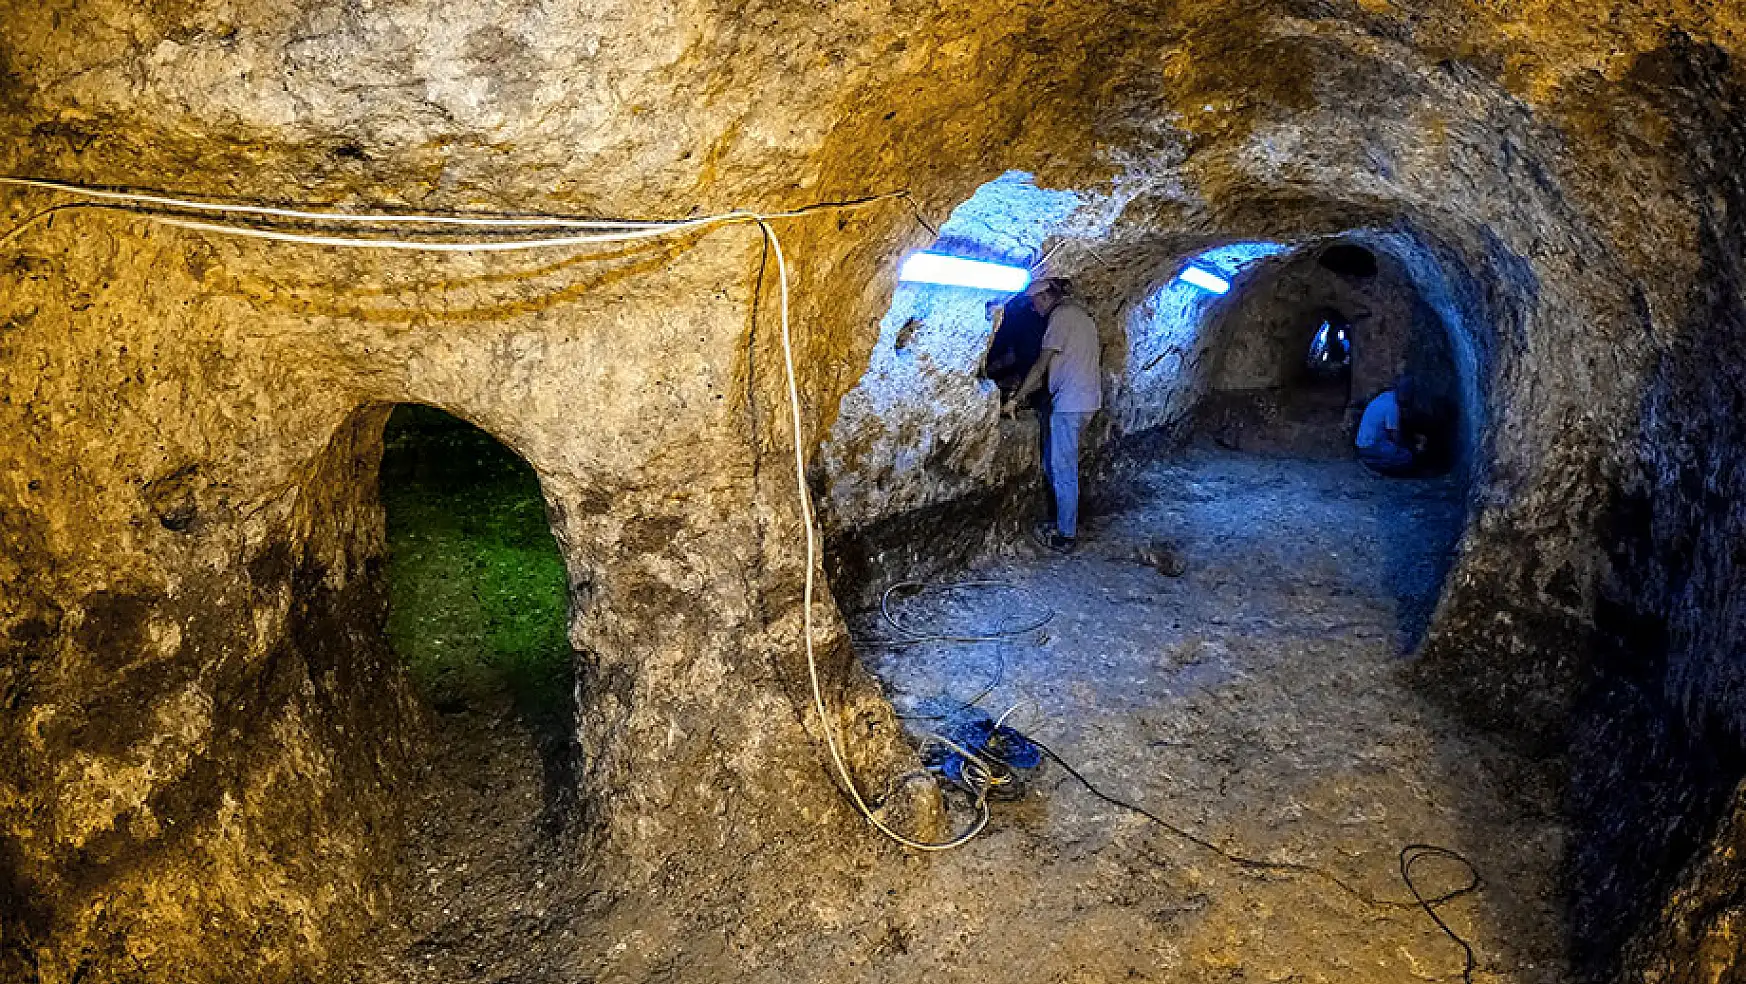 Konya'da tesadüfen antik yer altı şehri keşfedildi